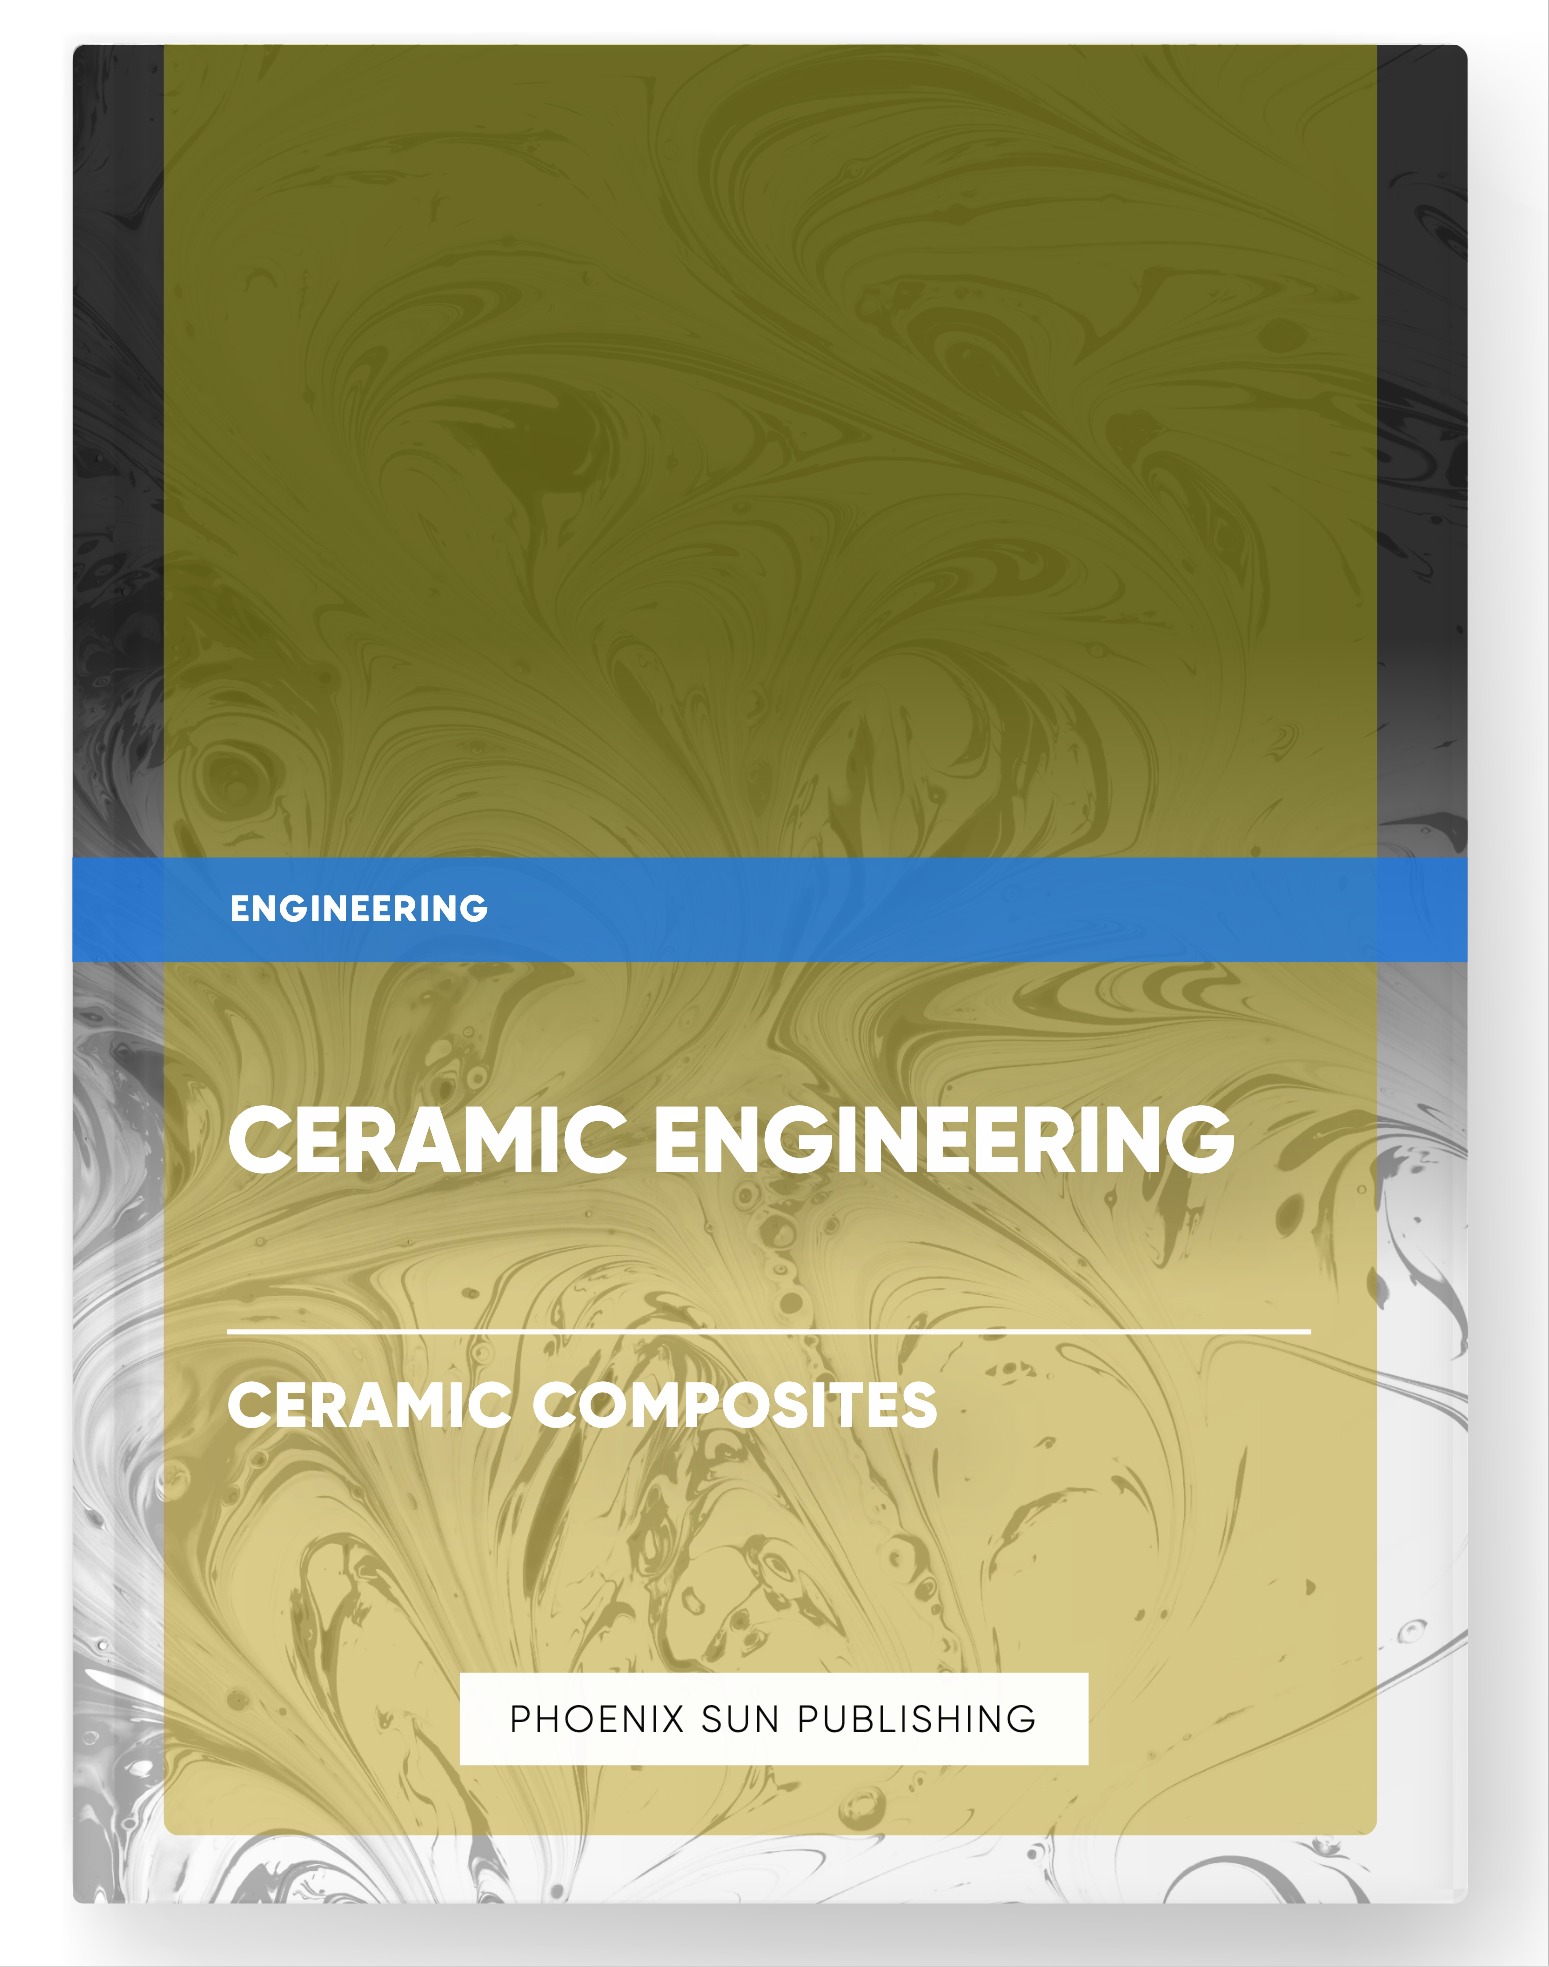 Ceramic Engineering – Ceramic Composites